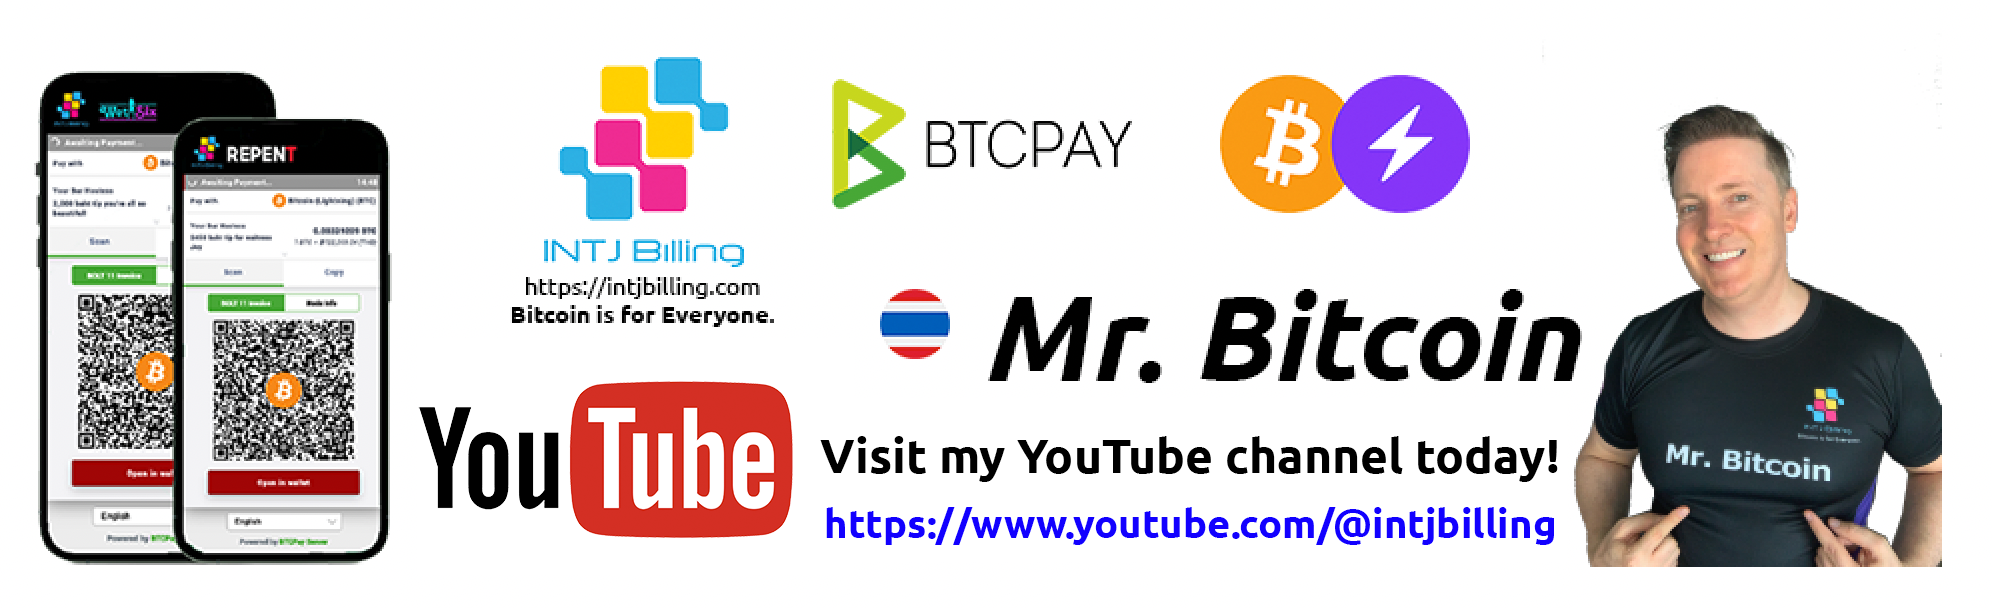 Mr. Bitcoin